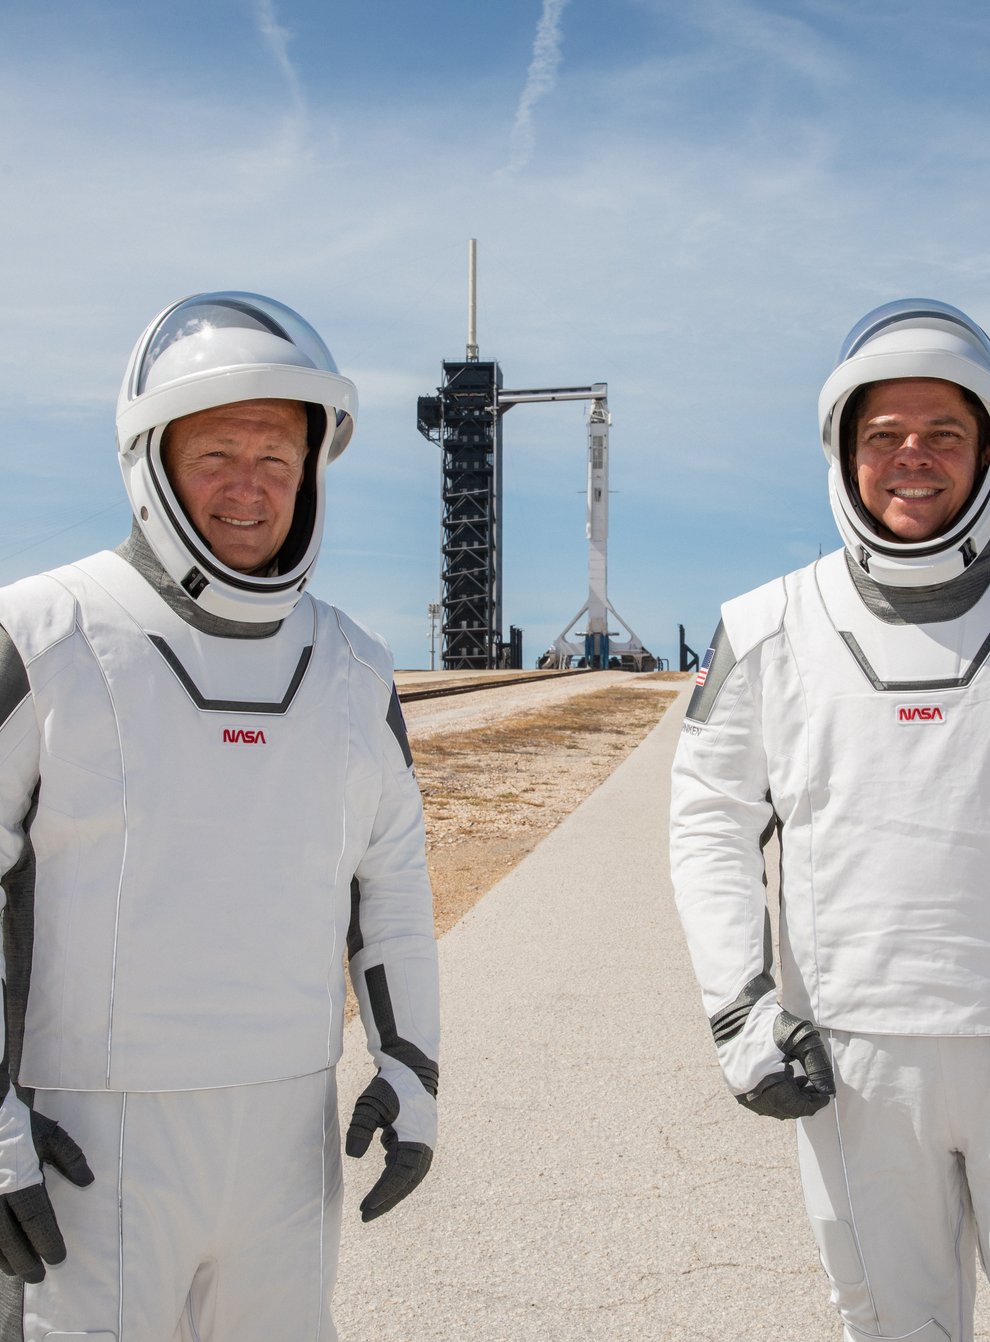 Nasa astronauts Douglas Hurley and Robert Behnken